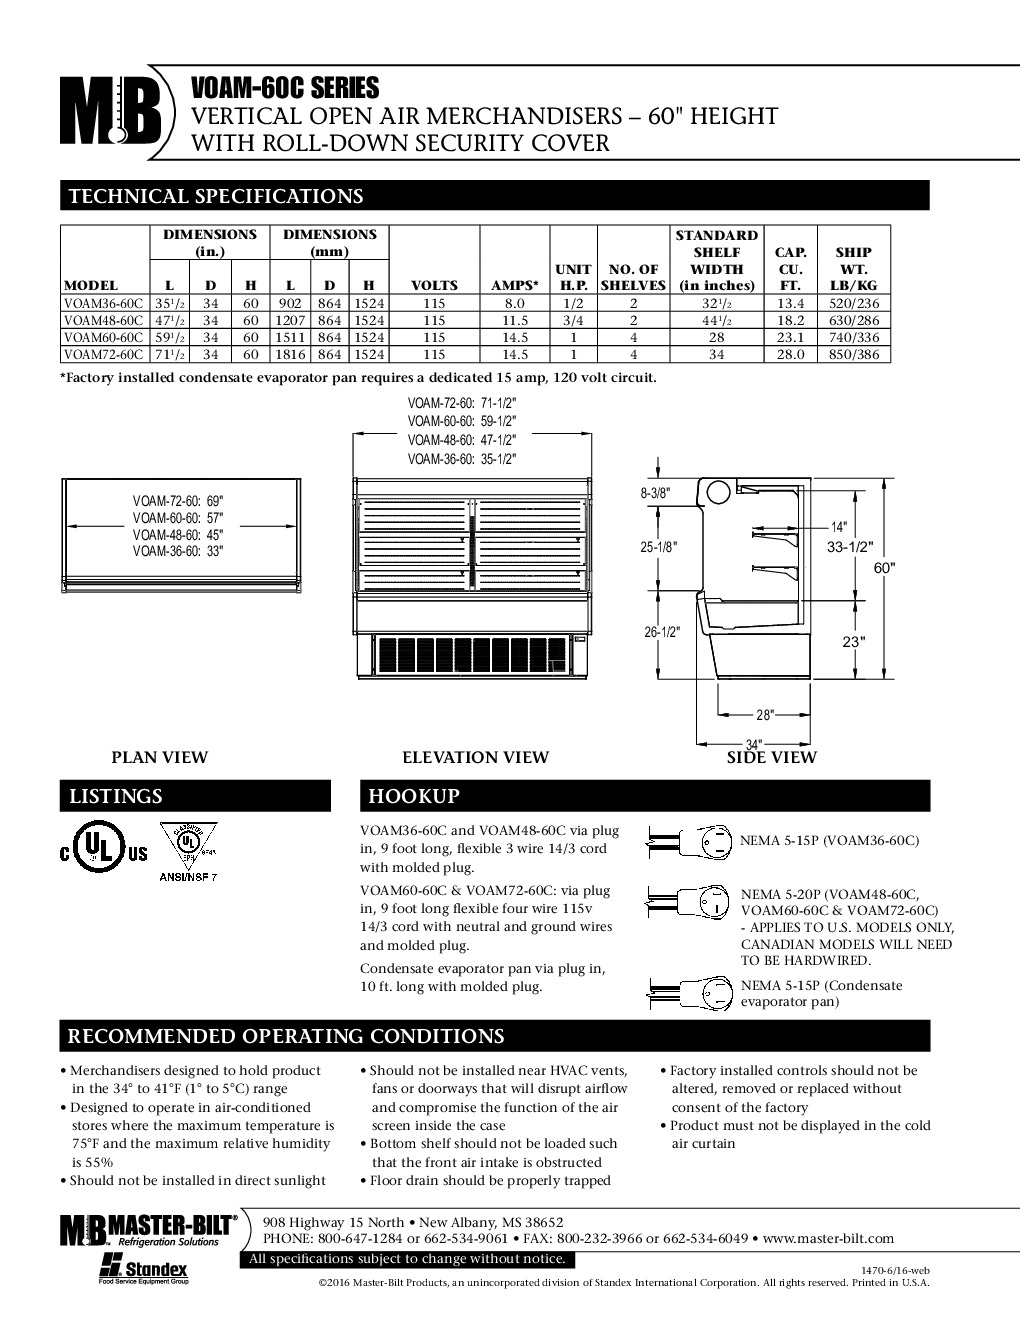 Master-Bilt VOAM60-60C Open Refrigerated Display Merchandiser